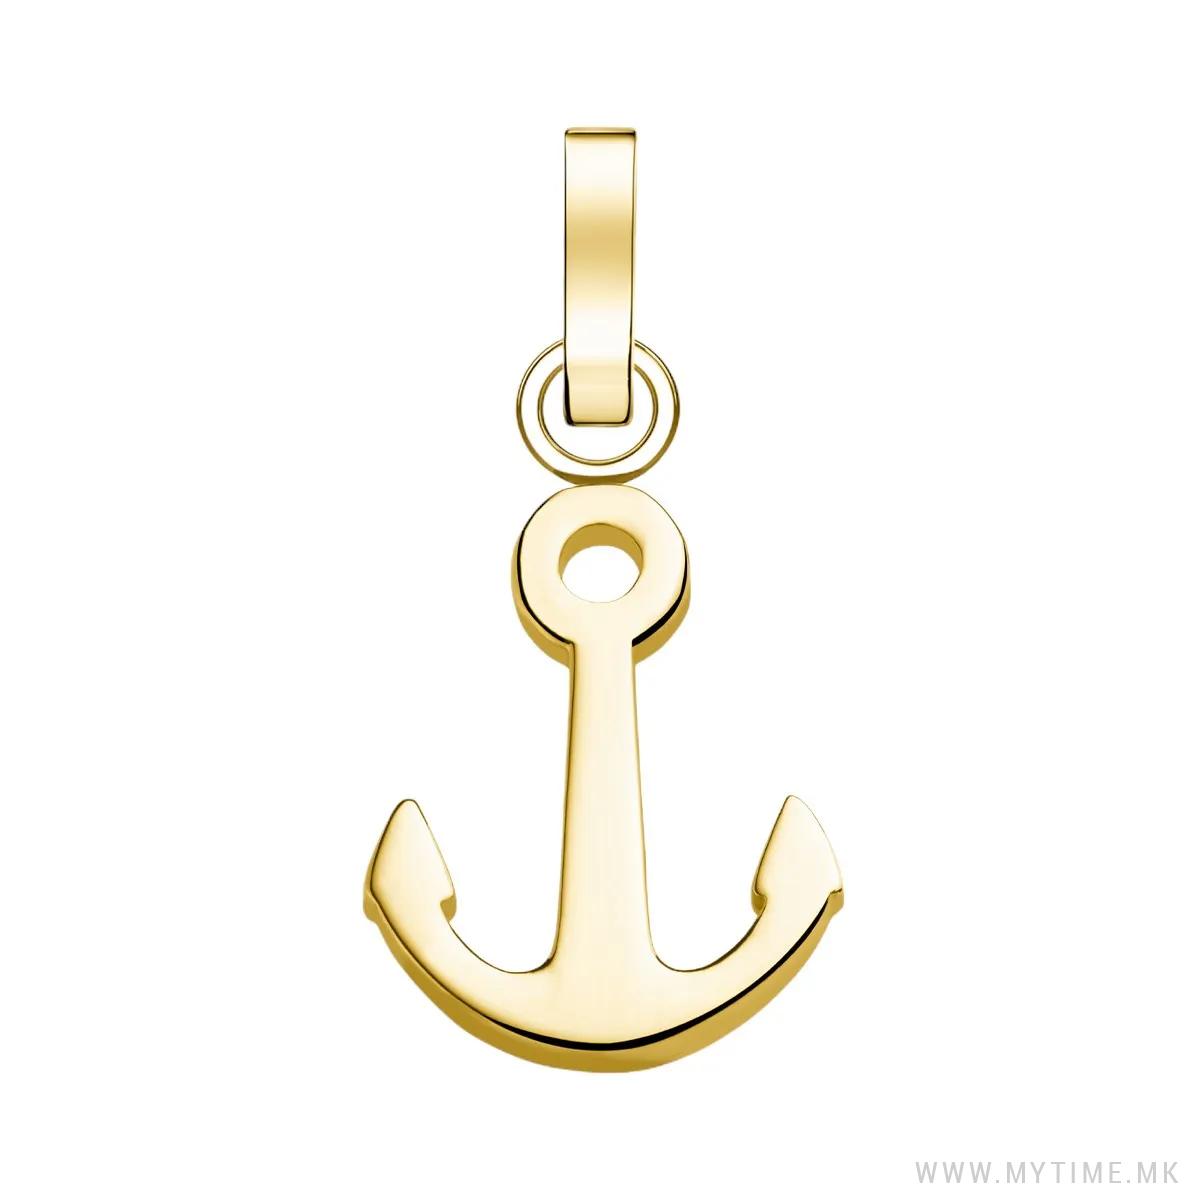 PE-Gold-Anchor 